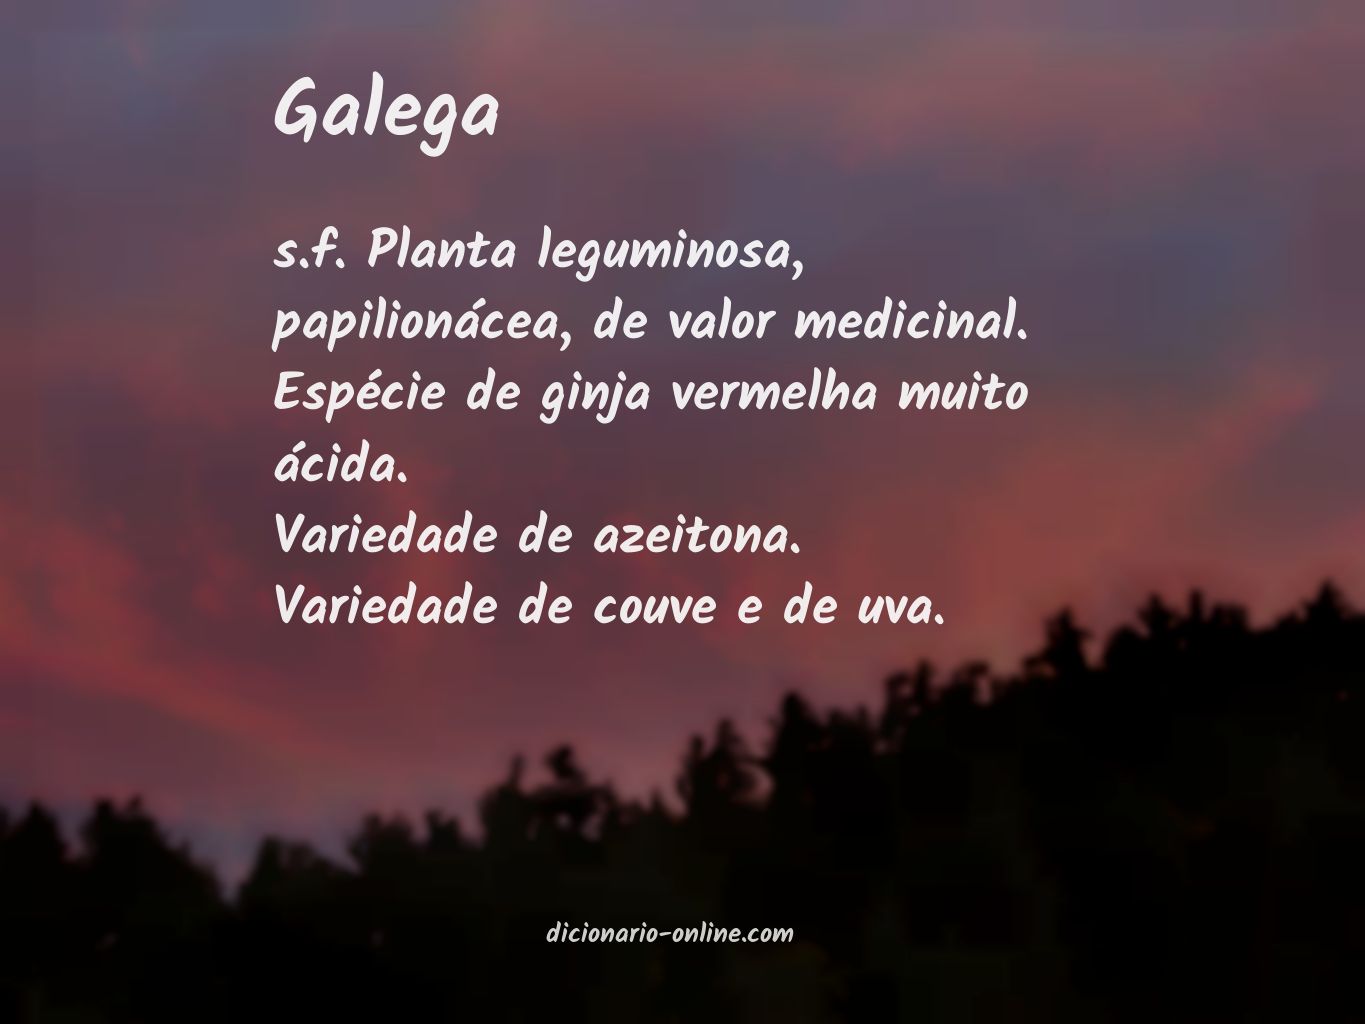 Significado de galega